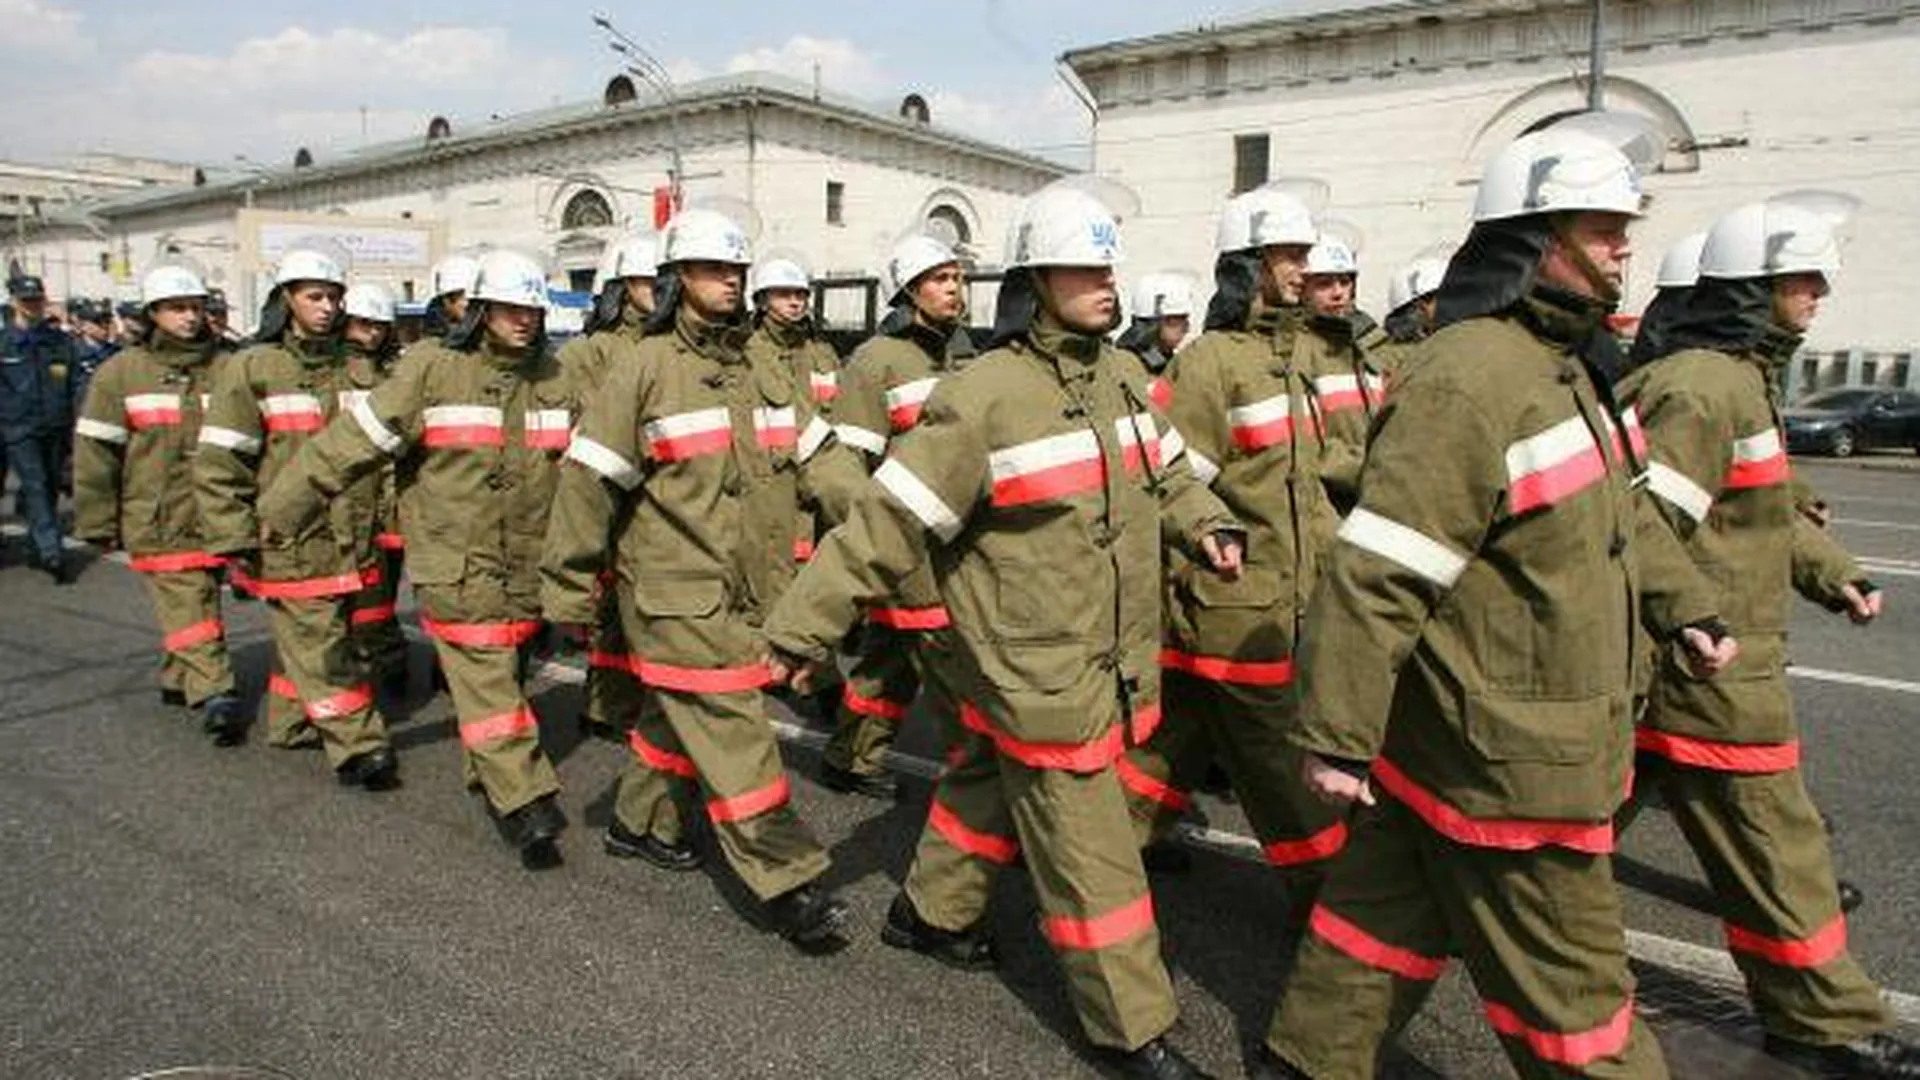 Праздник в честь Дня пожарной охраны России пройдет в Королеве 